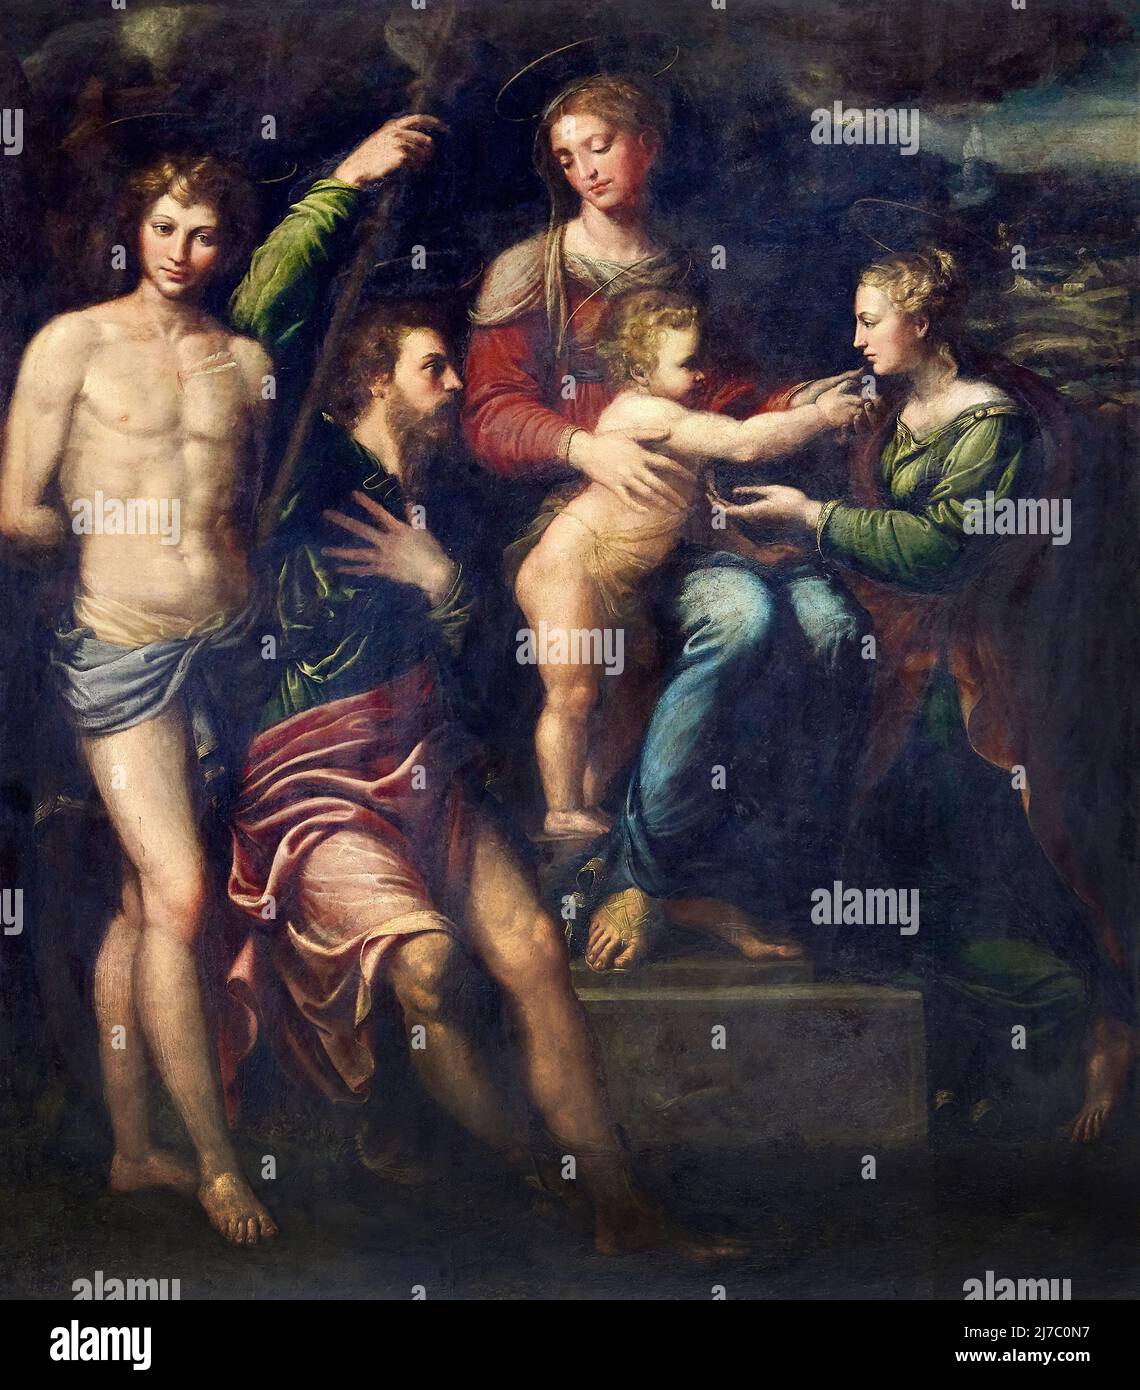 Matrimonio mistico di S. Caterina da Siena - olio su tela - Girolamo da Carpi - 1534 - Bologna, Italia,chiesa di San Salvatore Stockfoto